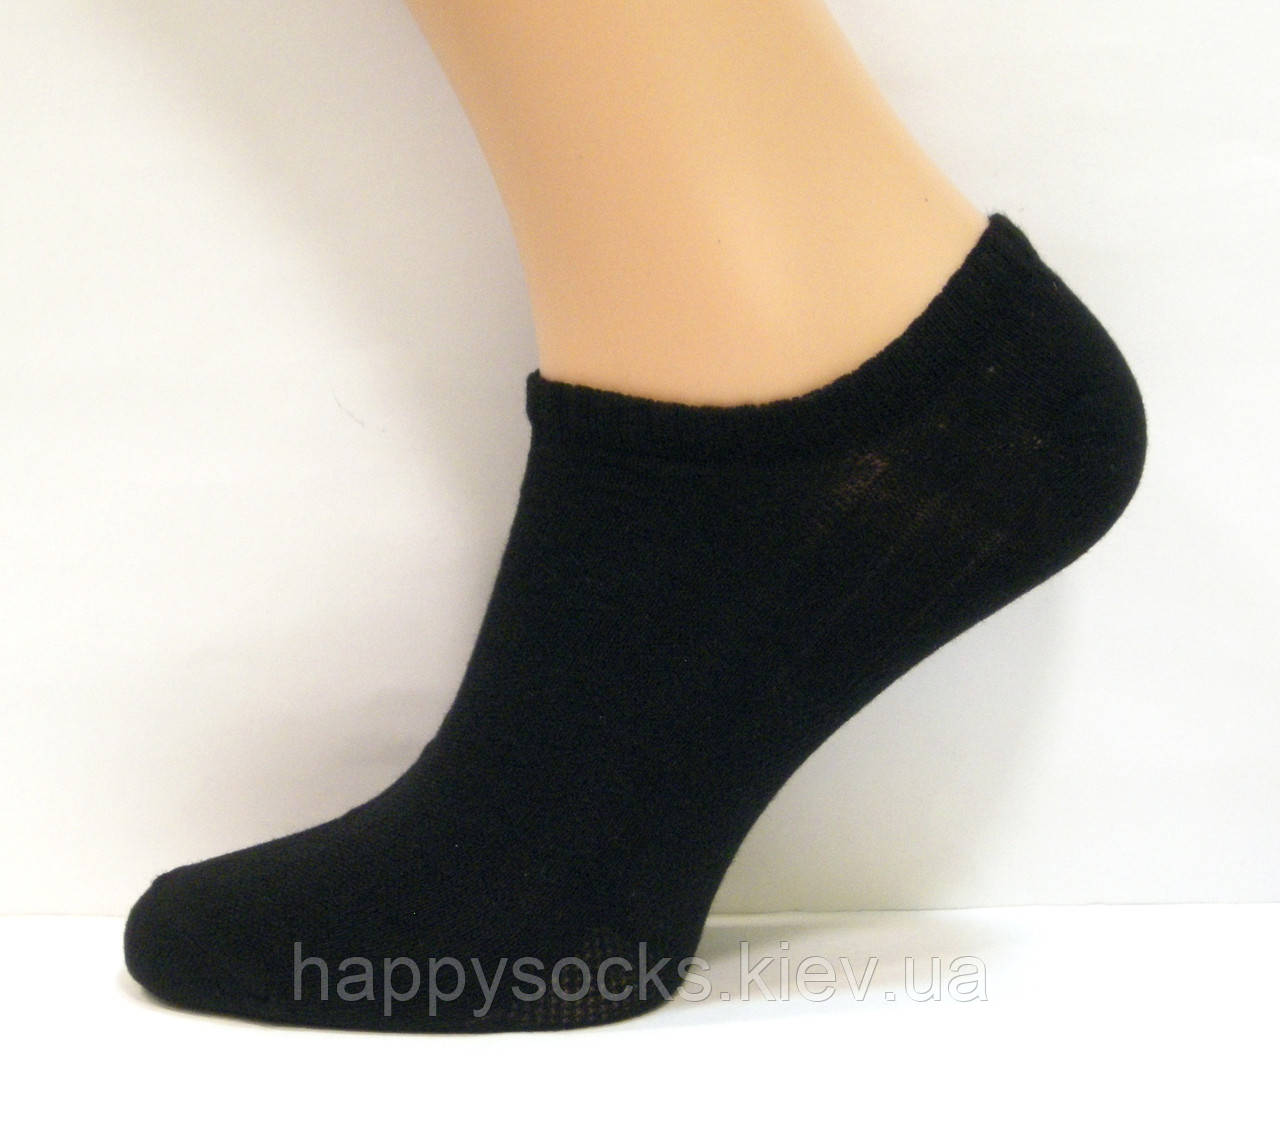 Шкарпетки в сіточку чоловічі чорного кольору 44-46р